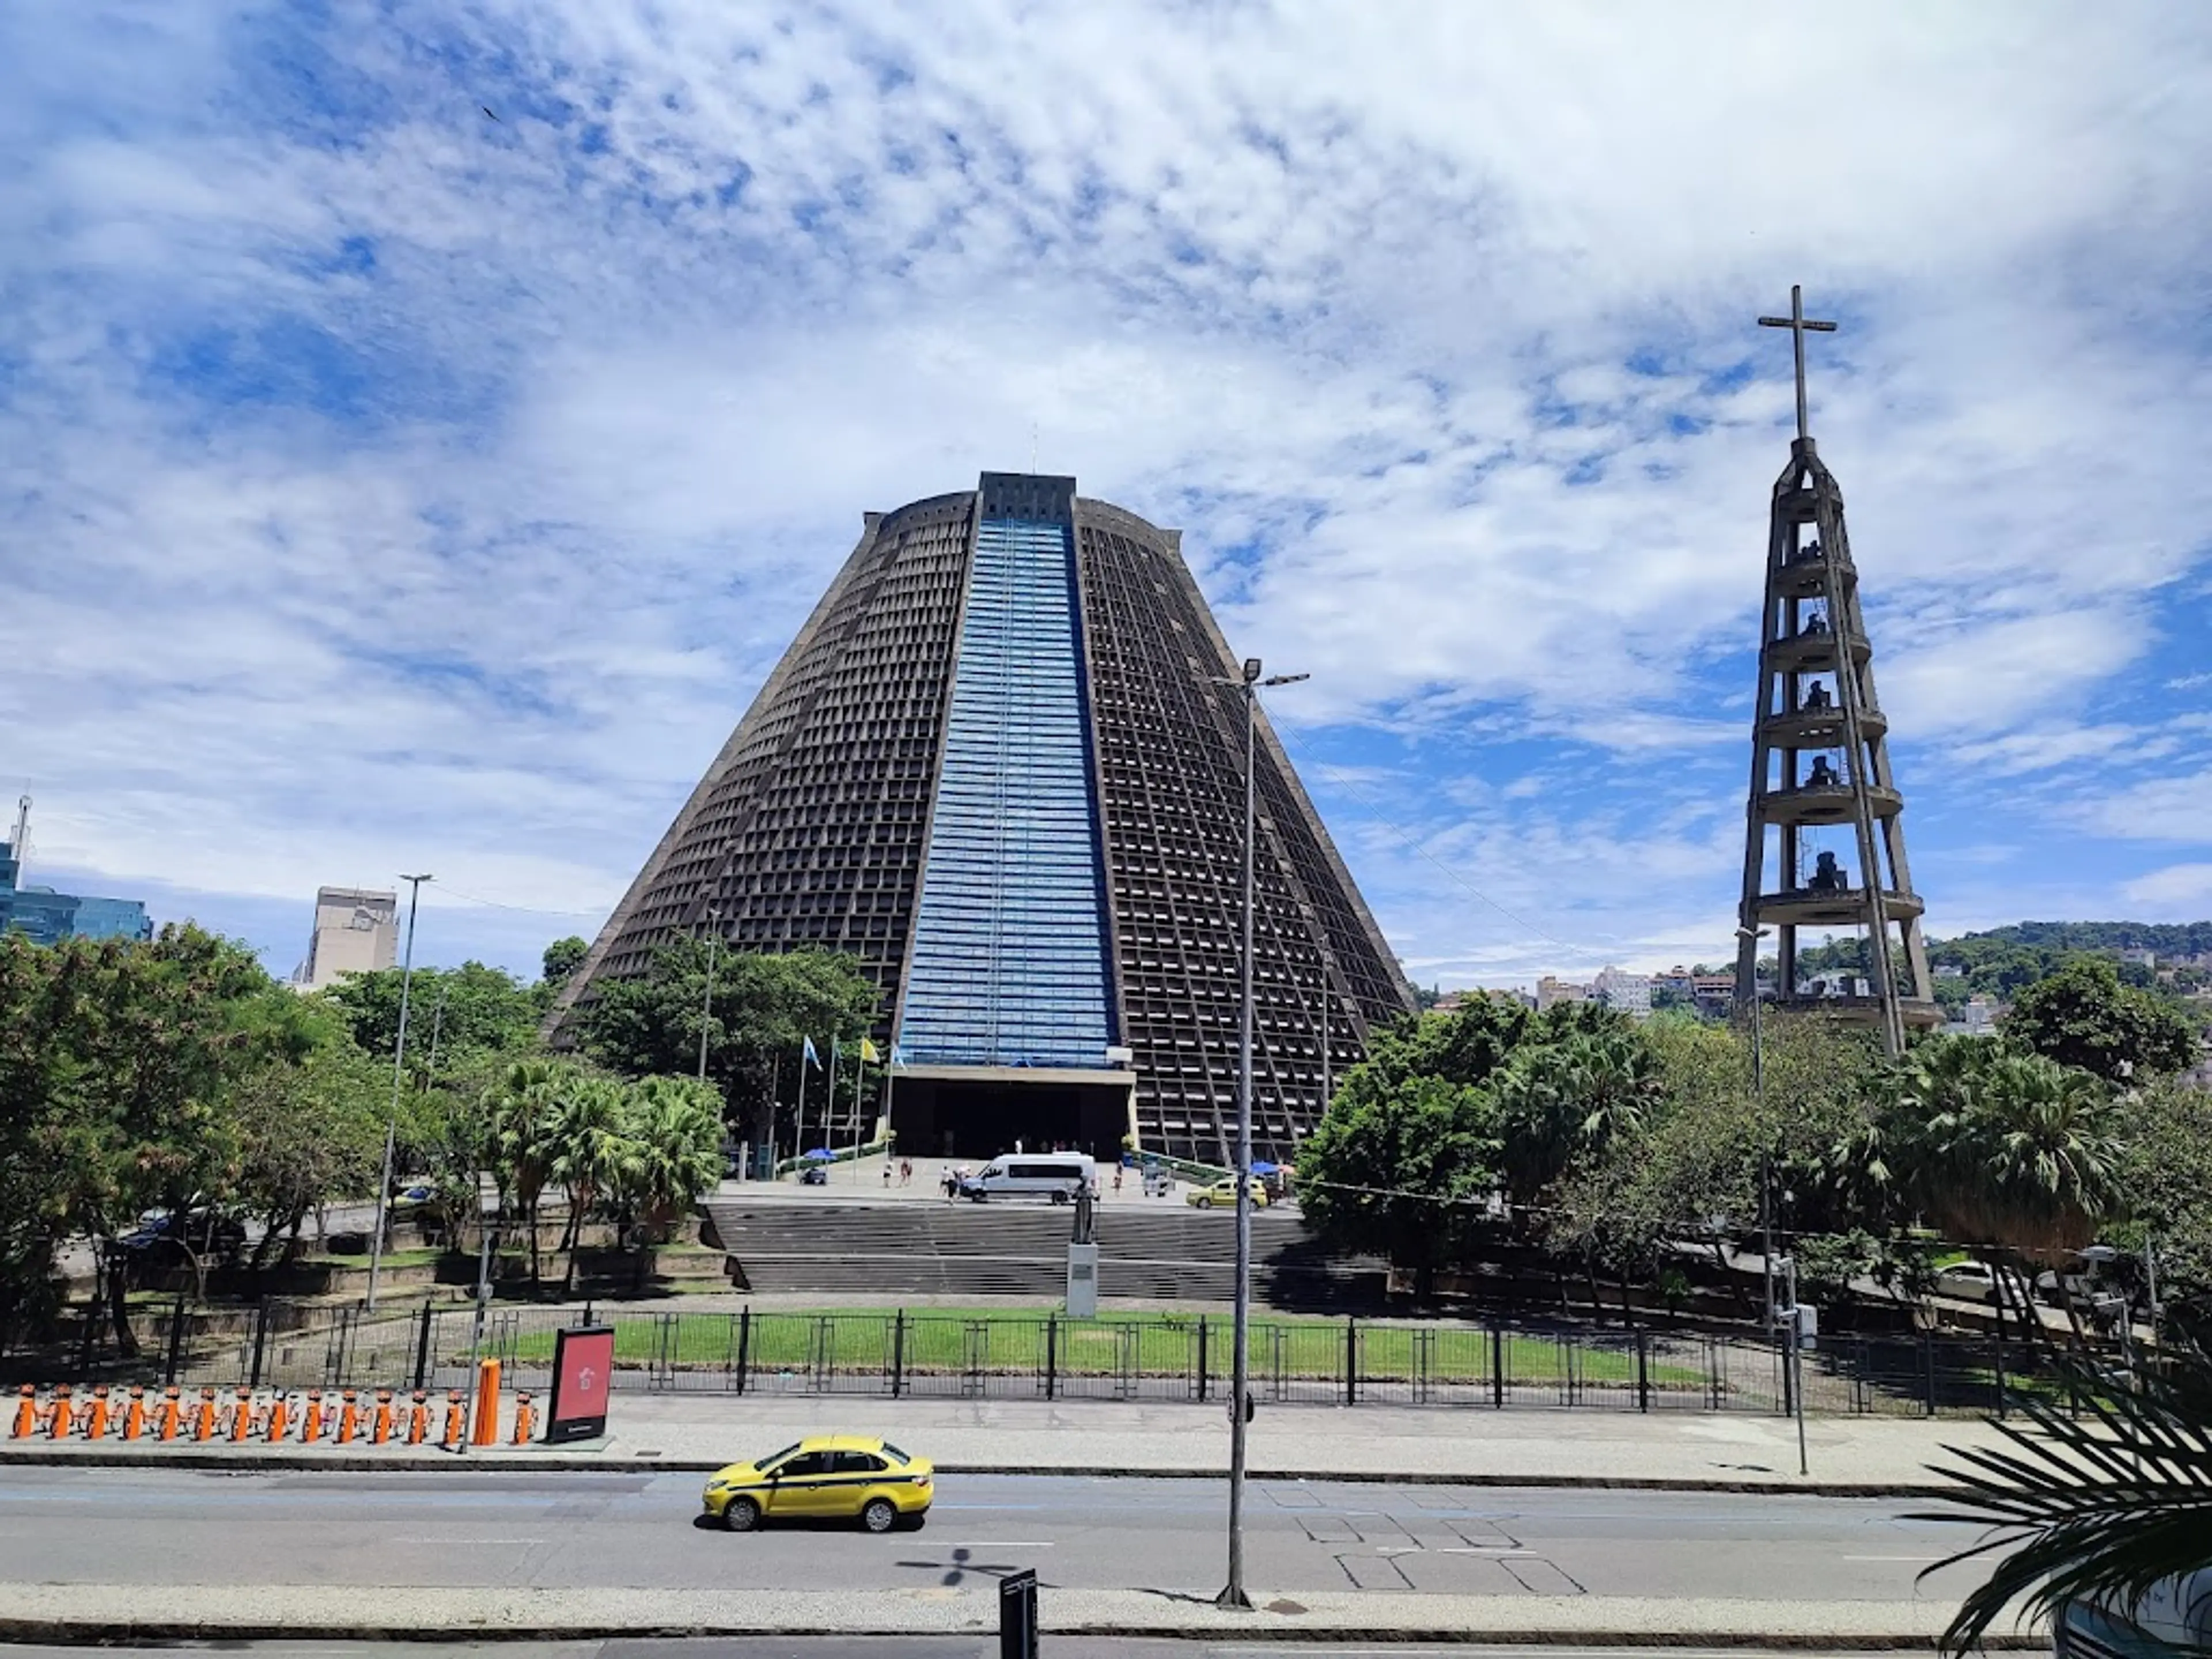 Rio de Janeiro Cathedral